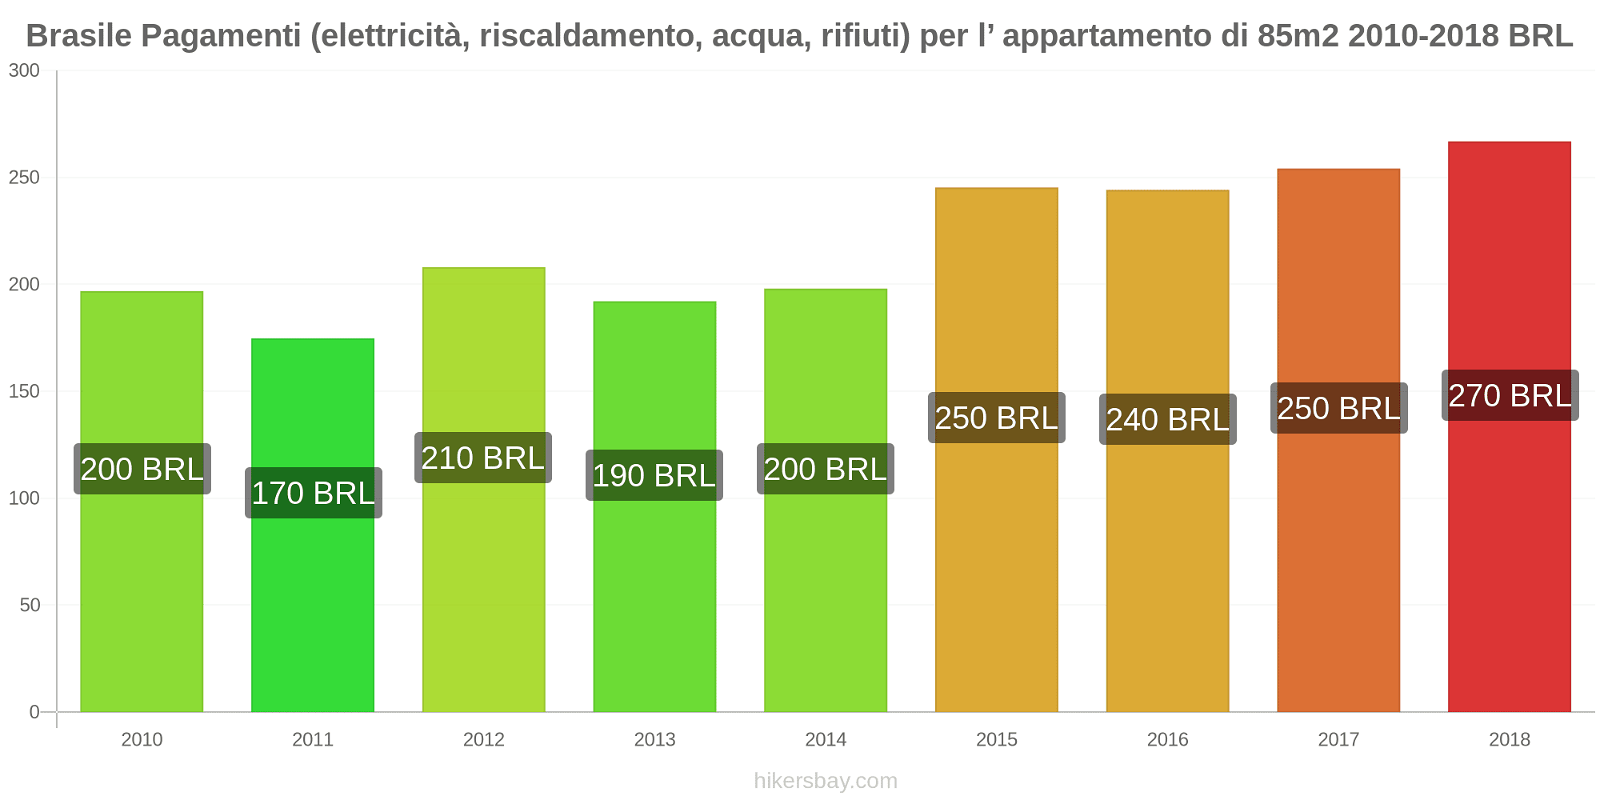 Brasile cambi di prezzo Utenze (elettricità, riscaldamento, acqua, rifiuti) per un appartamento di 85m2 hikersbay.com